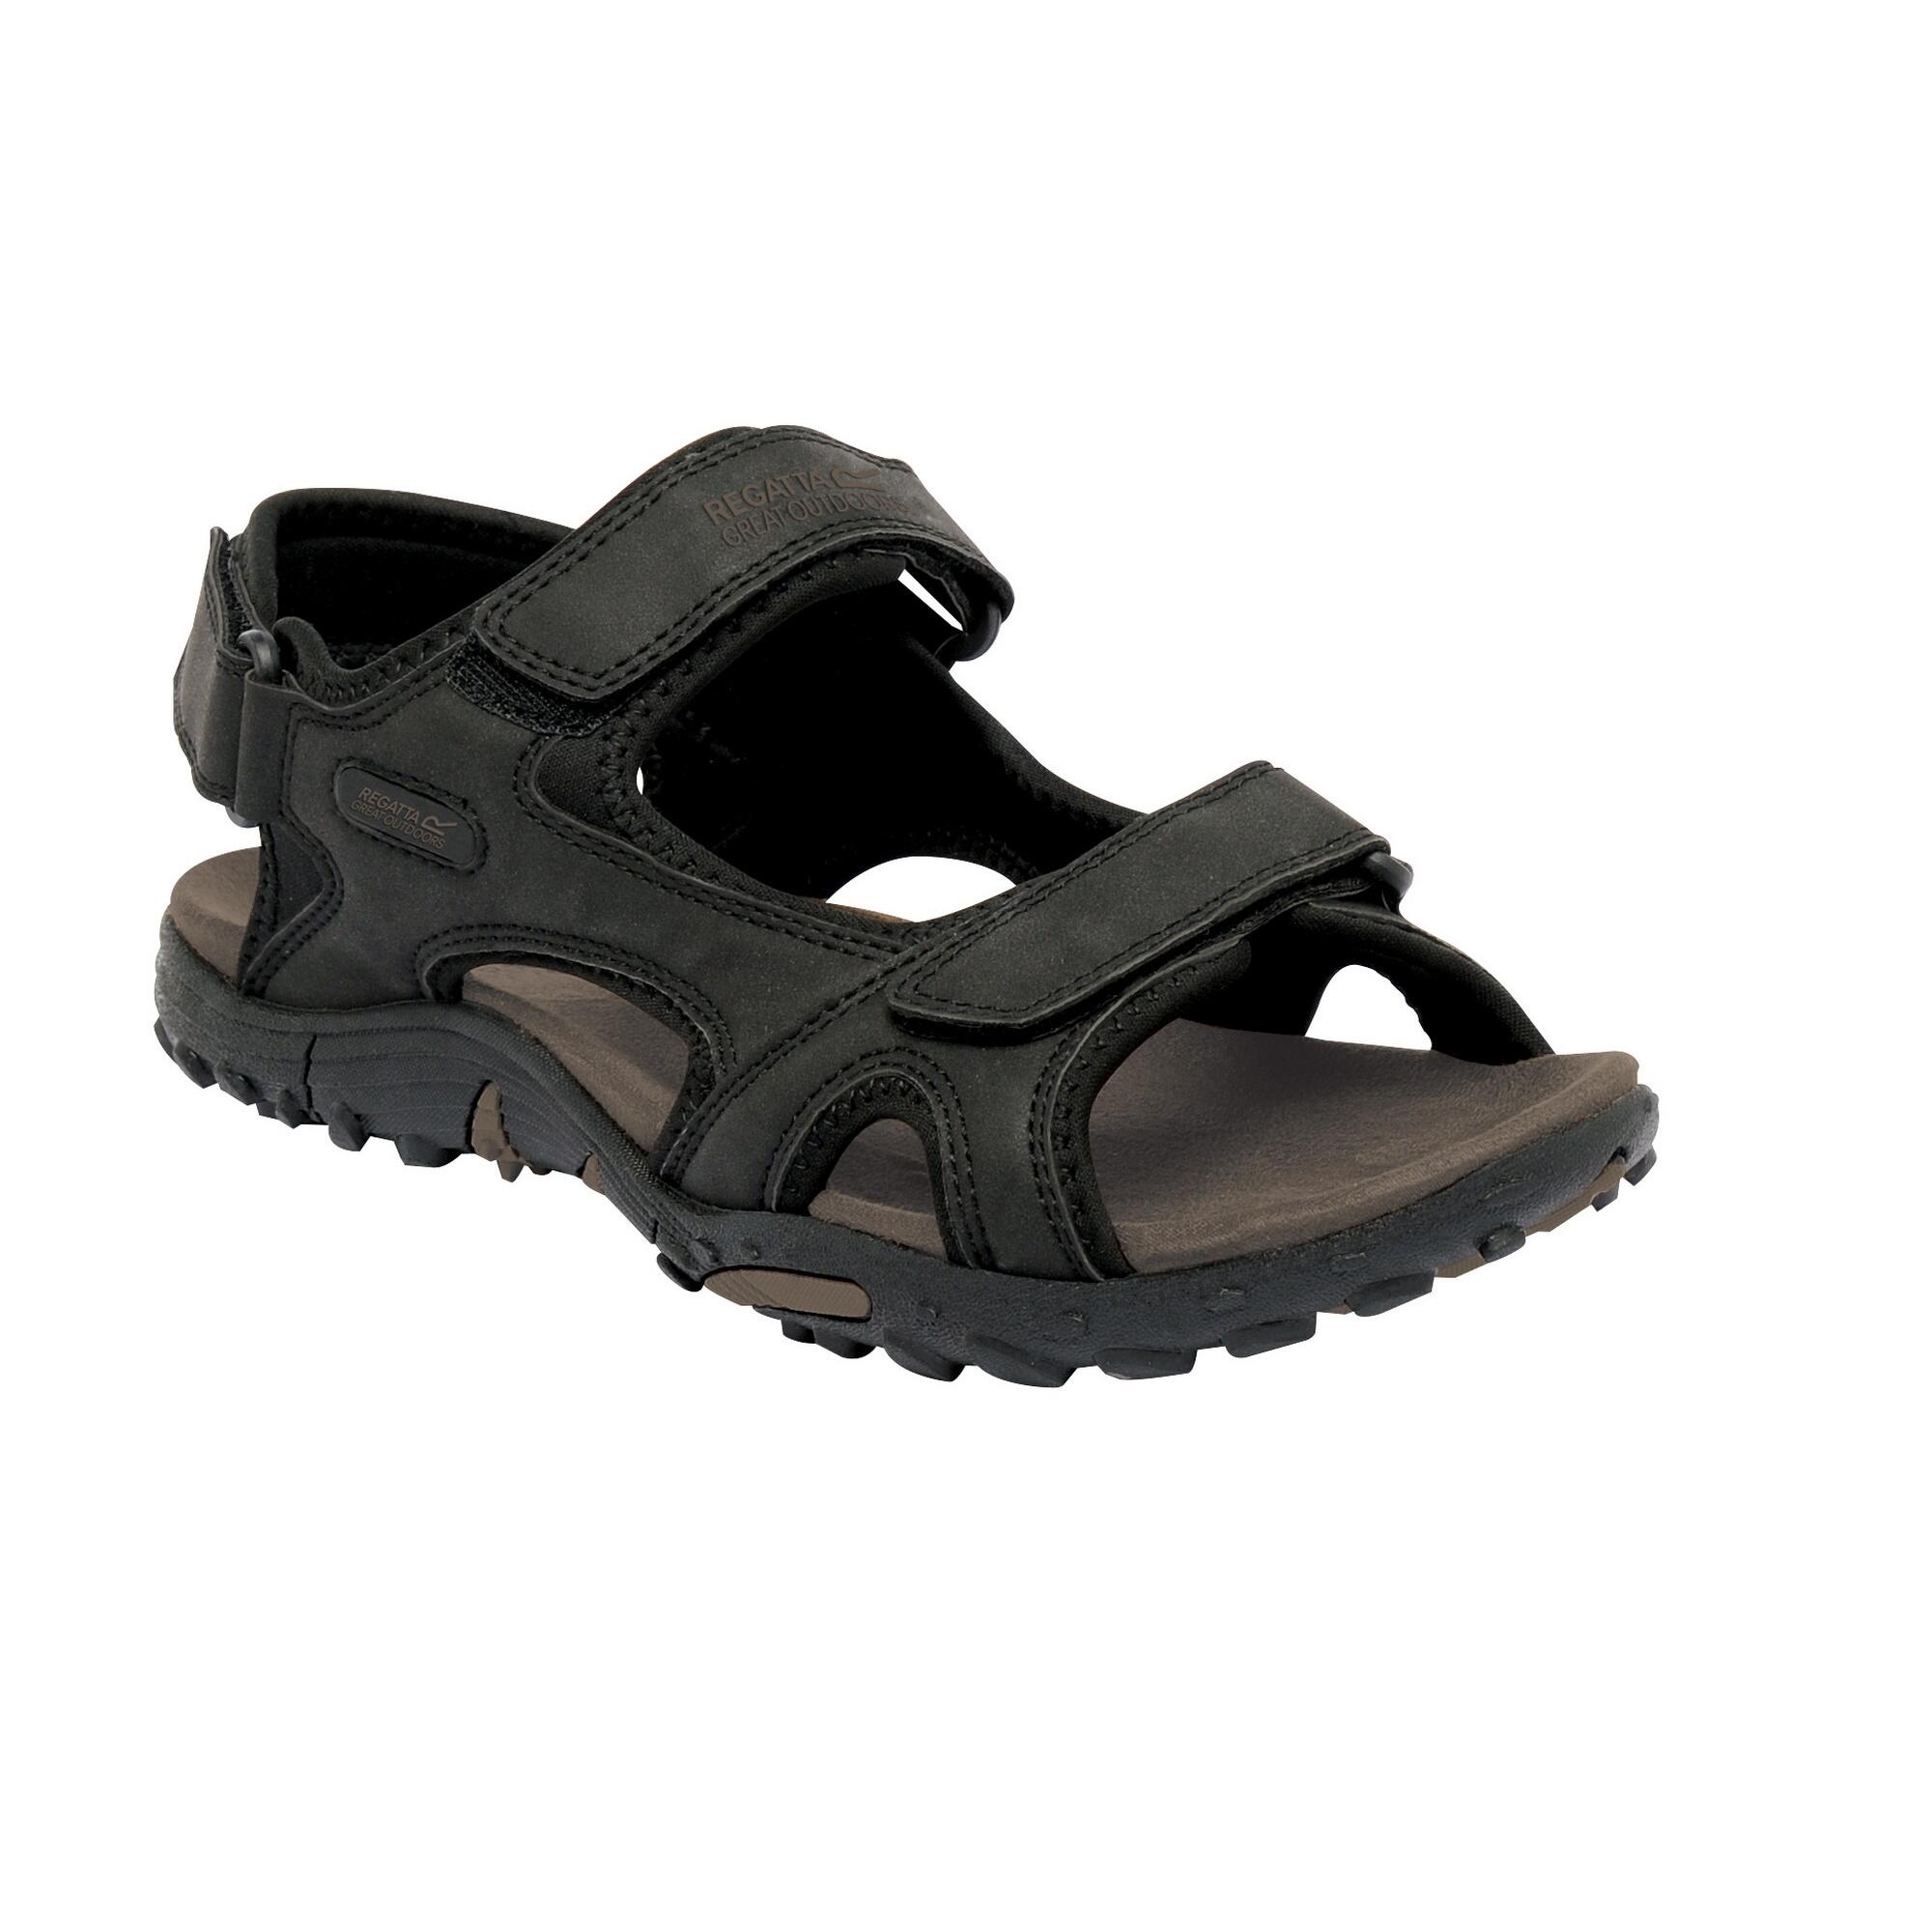 Schoenen Sandalen Outdoor sandalen Catwalk Outdoor sandalen zwart casual uitstraling 